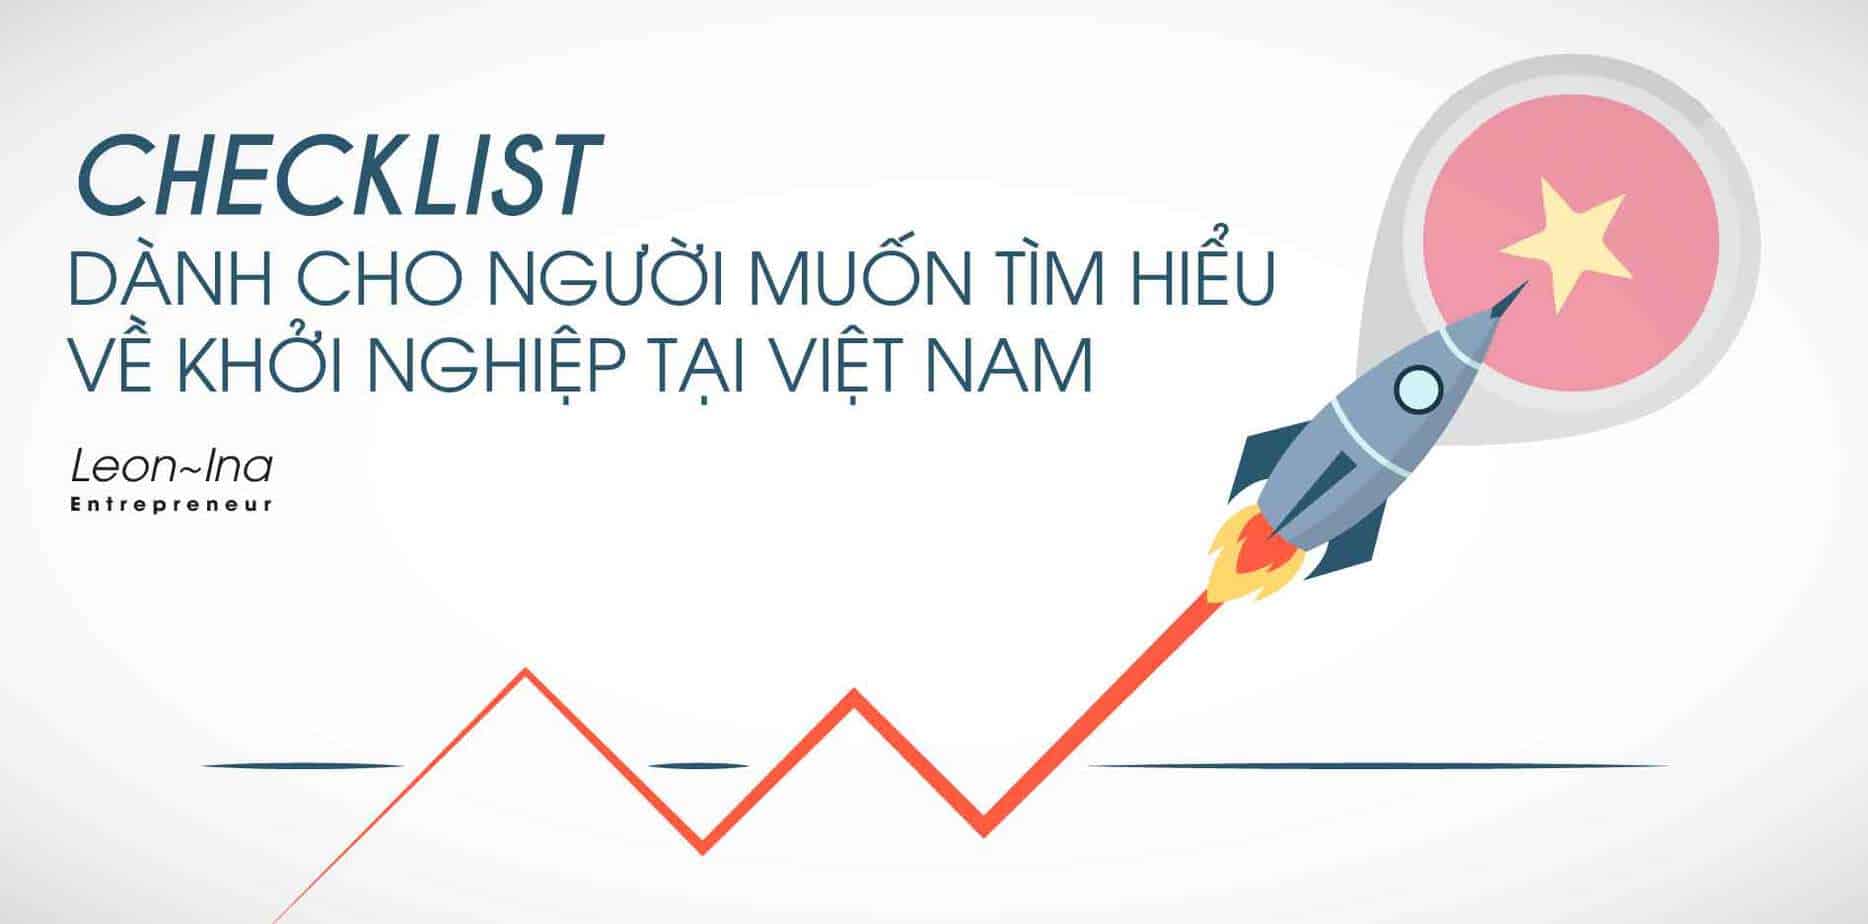 Checklist dành cho người muốn tìm hiểu về Khởi Nghiệp Startup tại Việt Nam